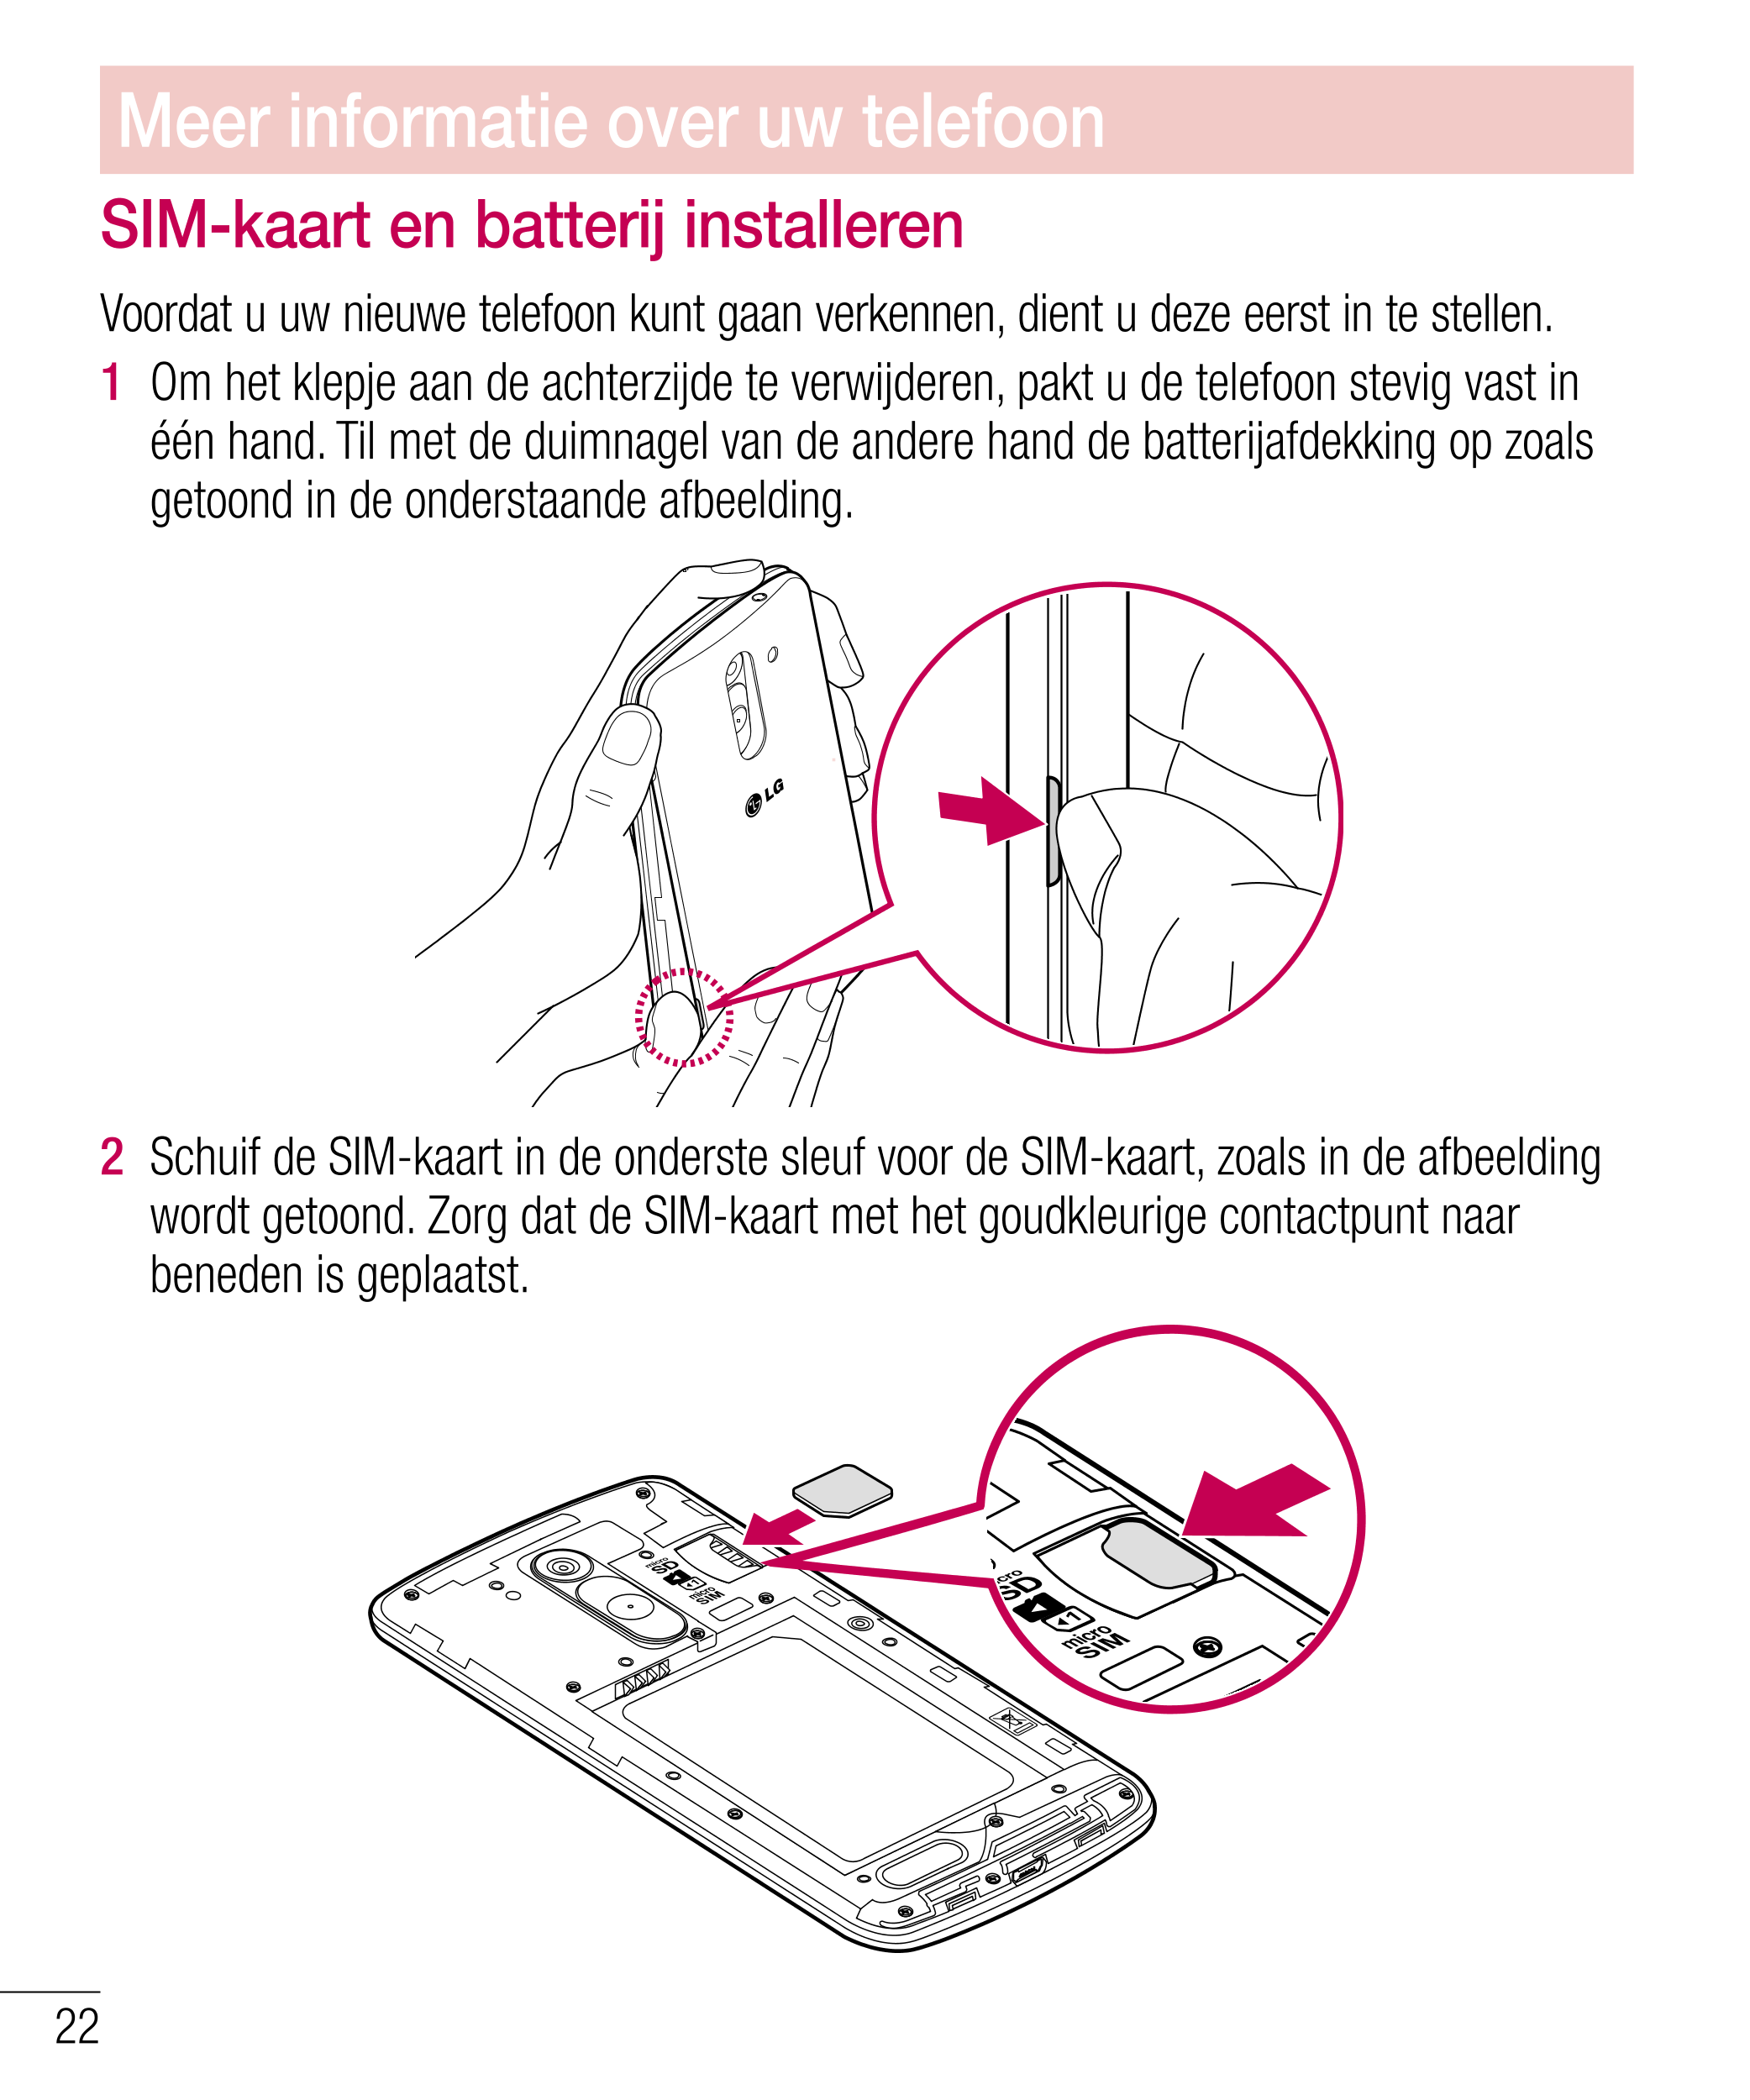 Meer informatie over uw telefoon
SIM-kaart en batterij installeren
Voordat u uw nieuwe telefoon kunt gaan verkennen, dient u dez